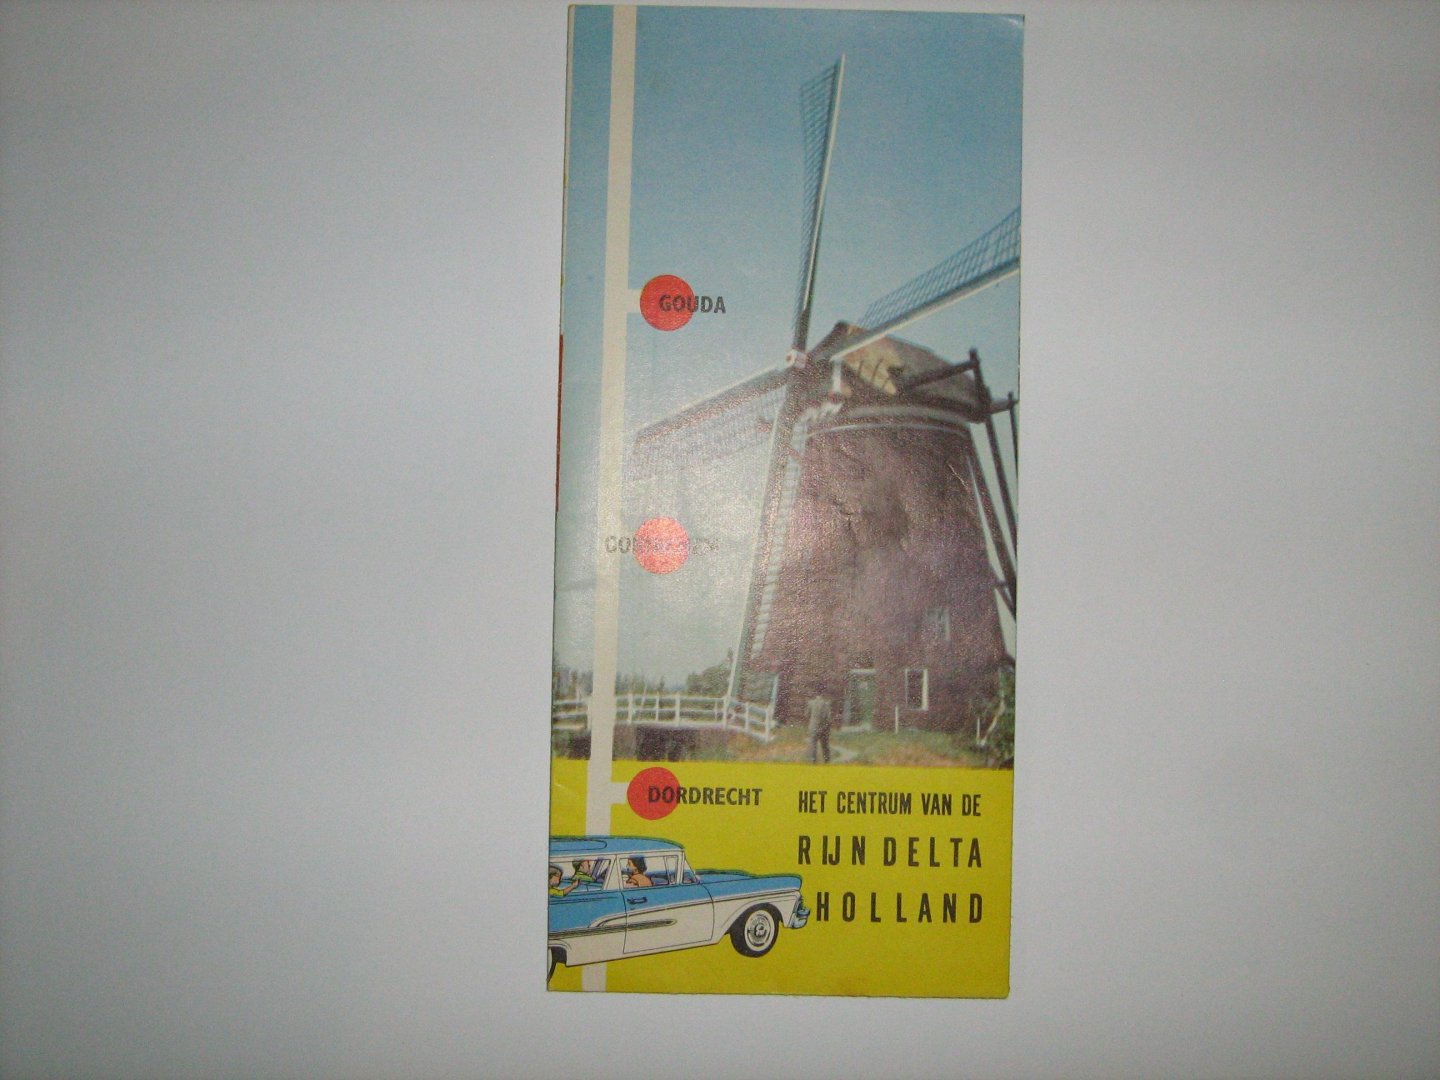  - Gouda, Gorinchem, Dordrecht. V.V.V. 1960-1961 Het centrum van Rijndelta Holland